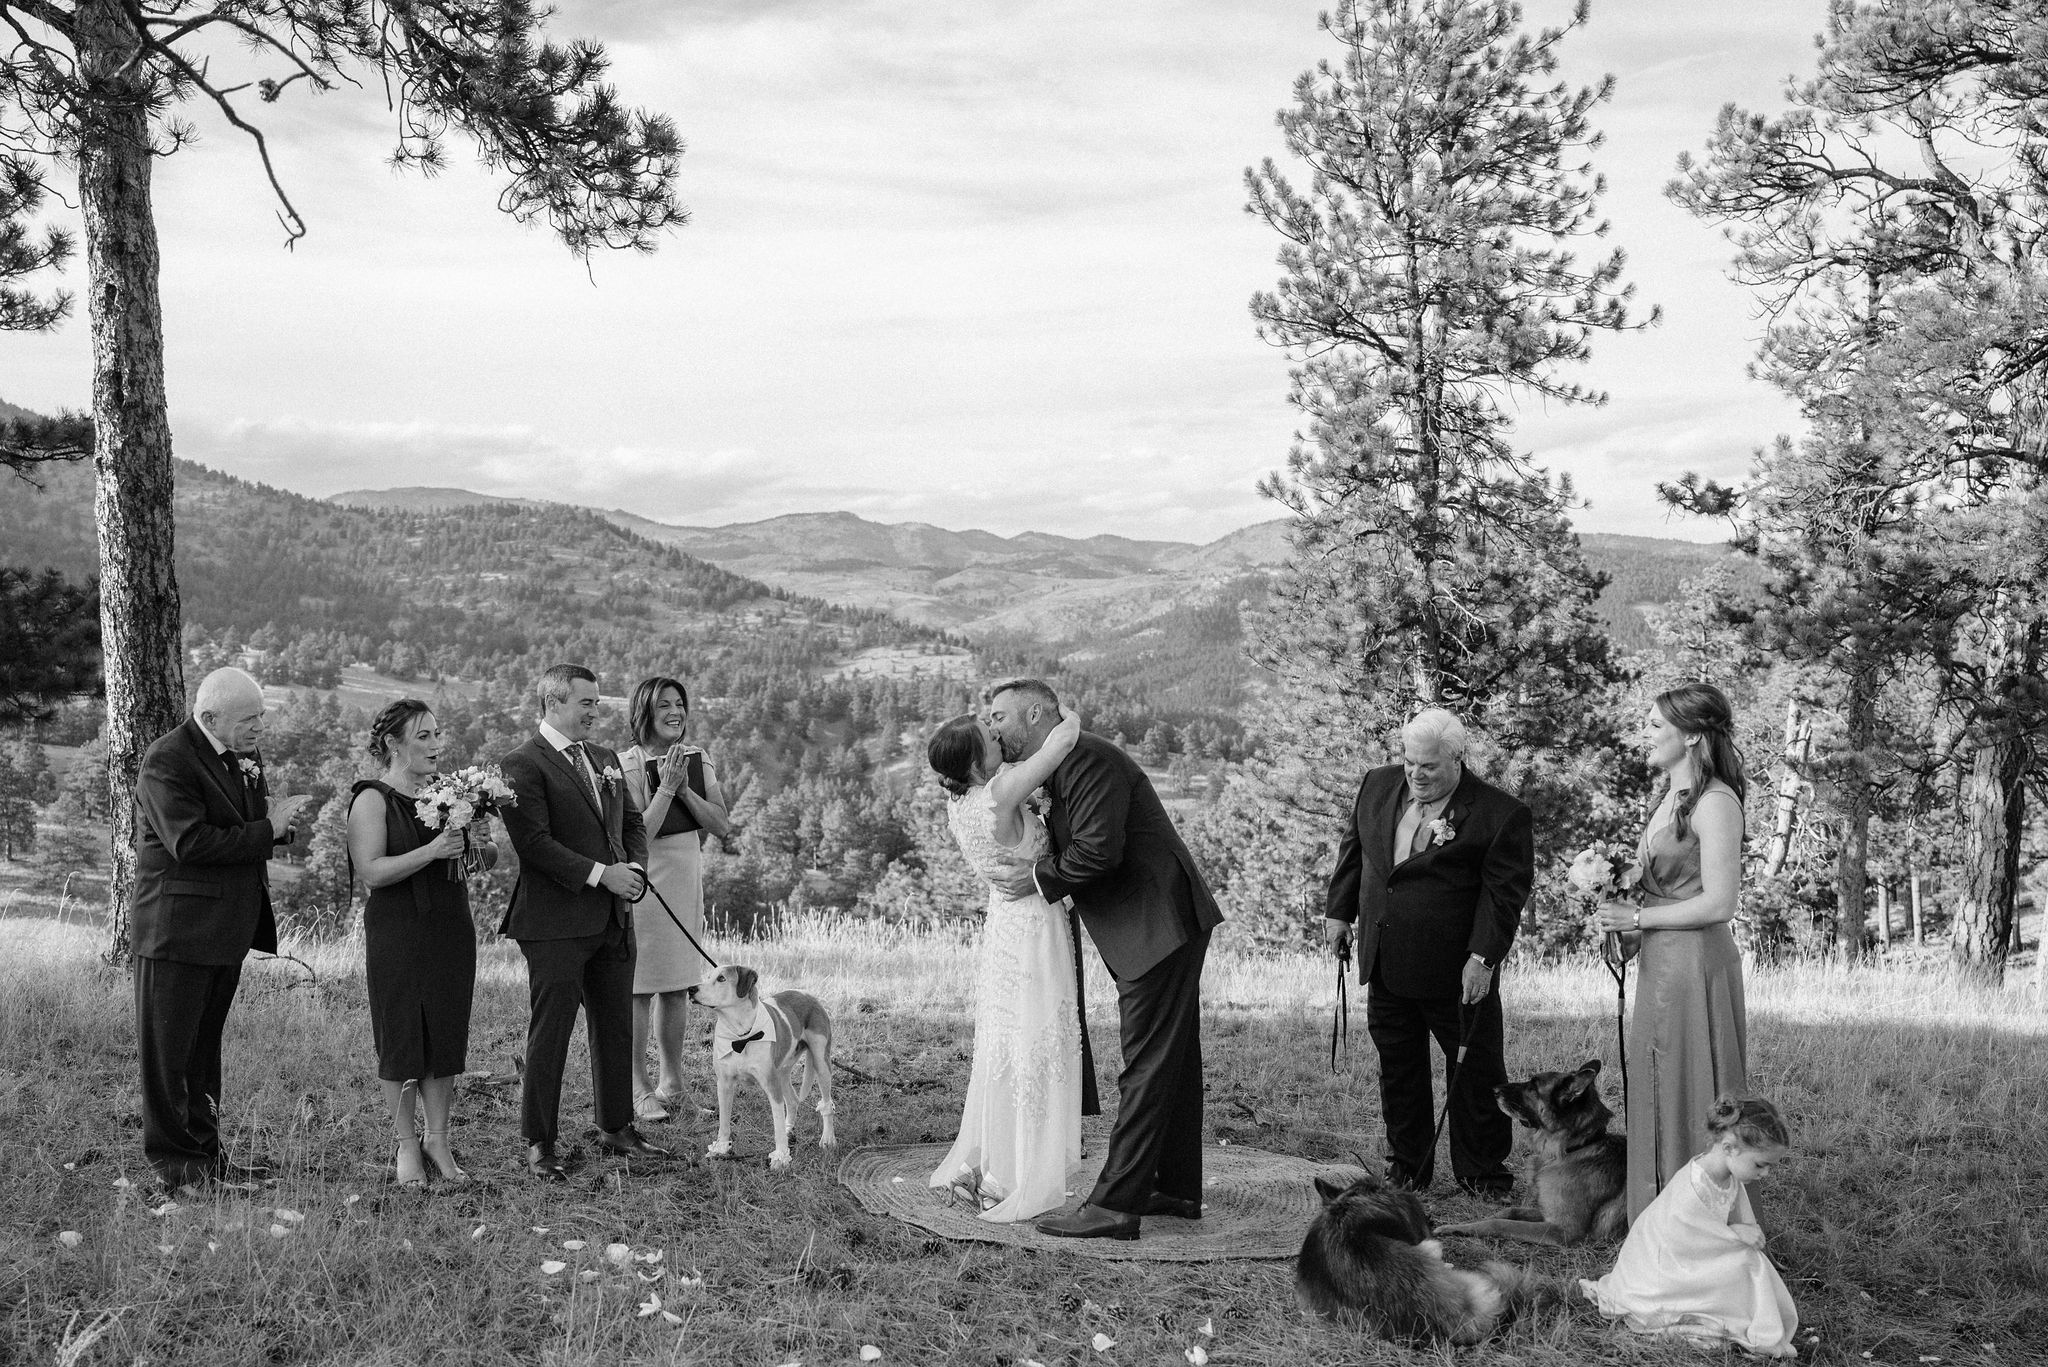 wedding photos taken during an intimate wedding